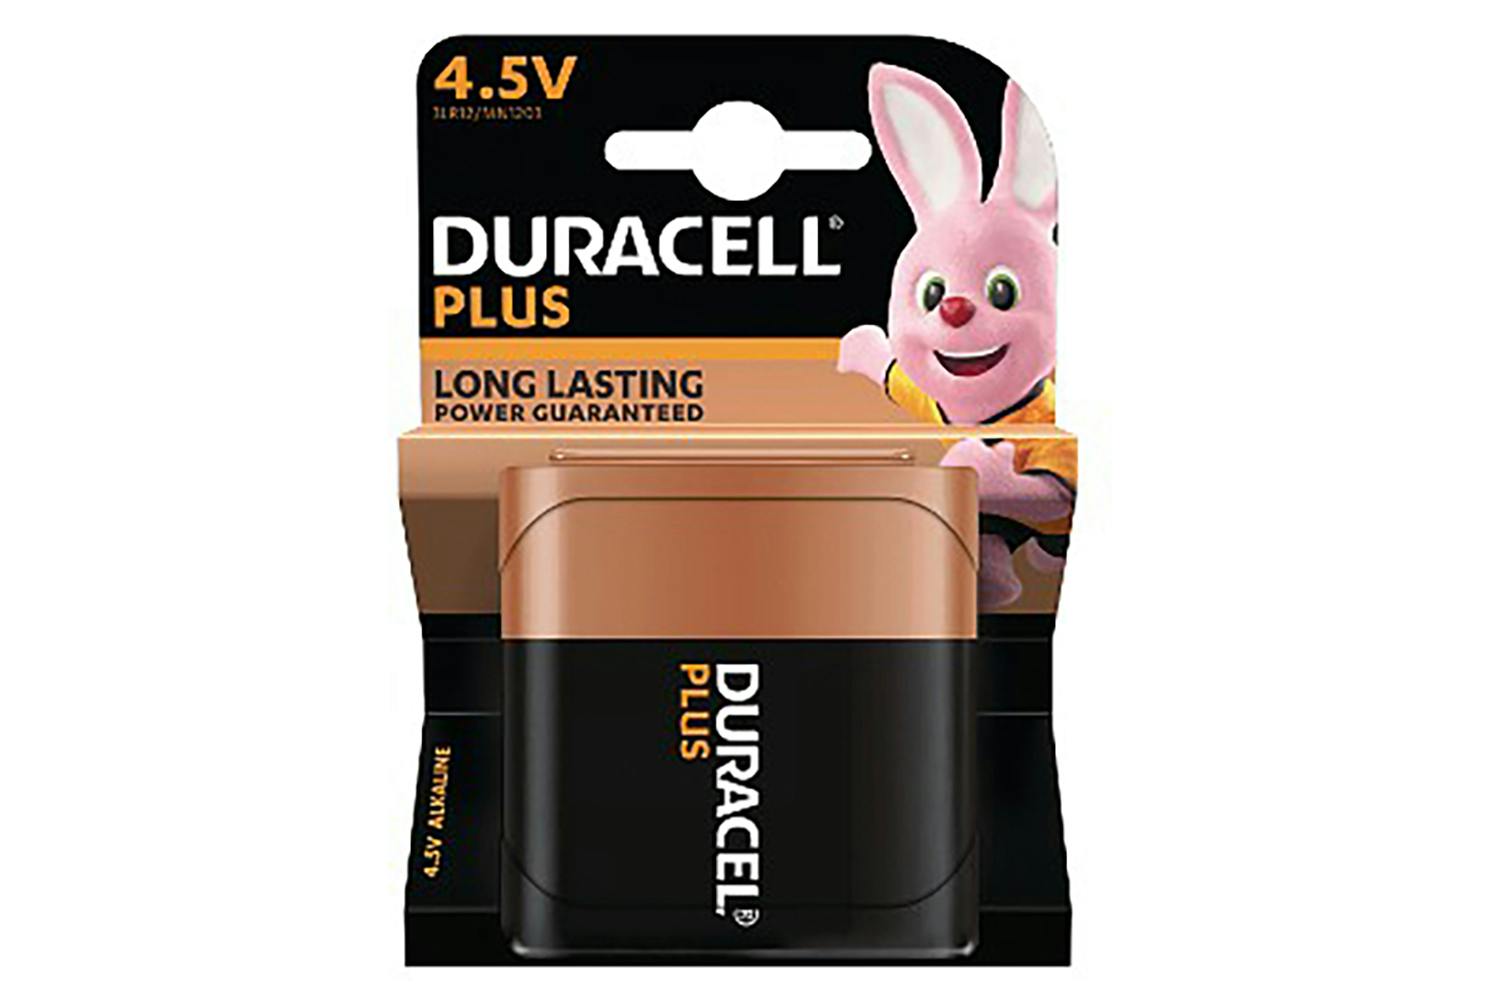 Duracell Plus Power 4.5V Battery